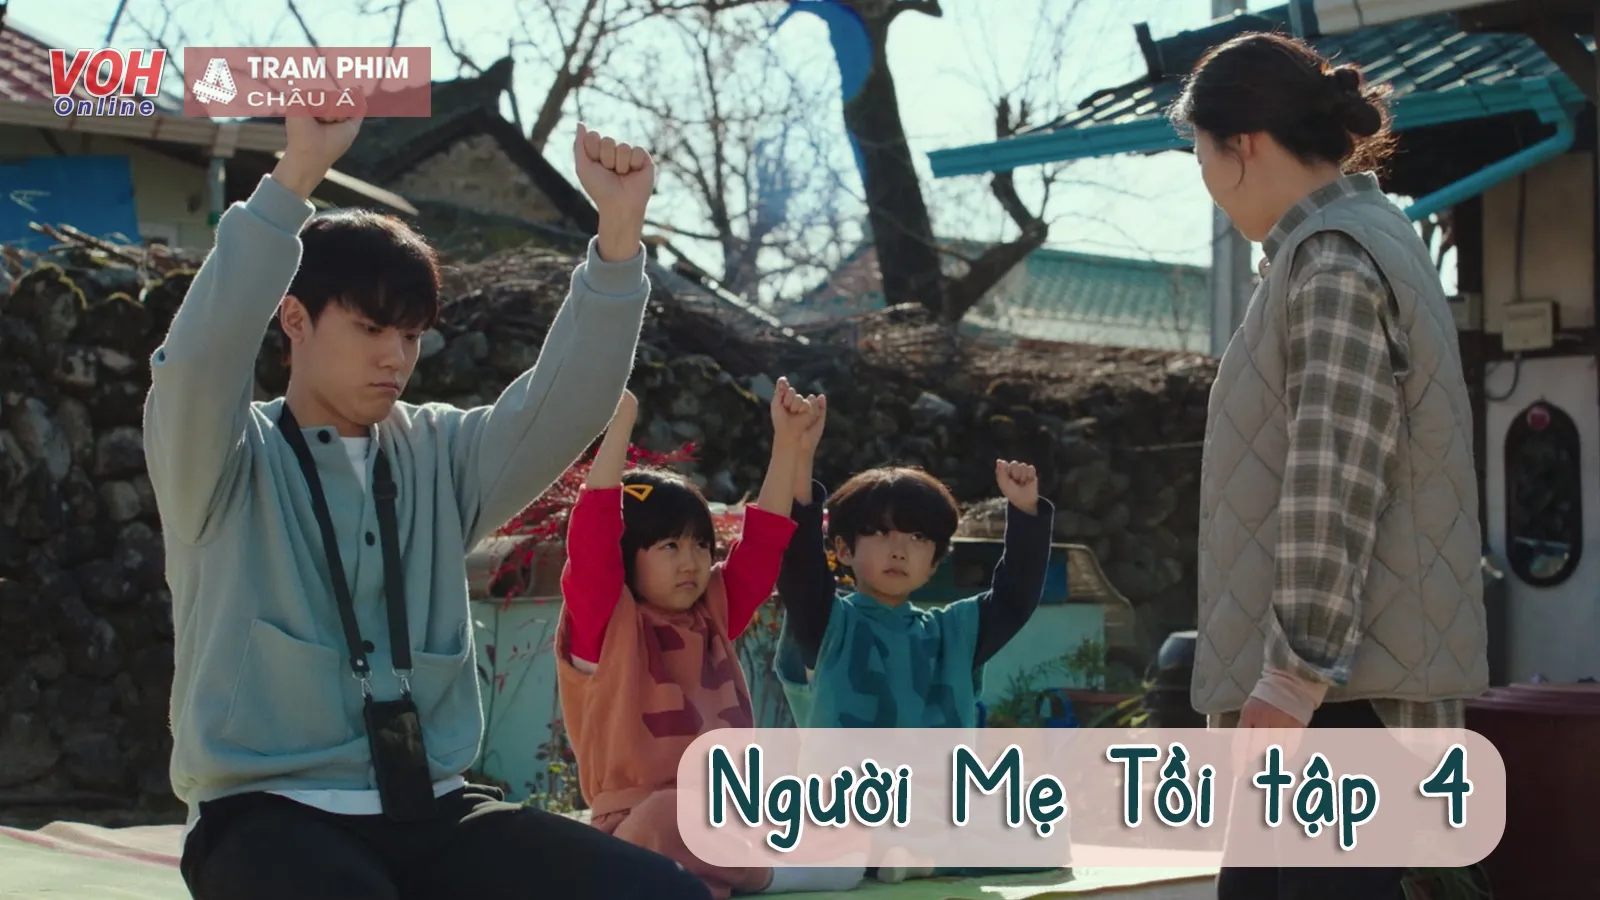 The Good Bad Mother (Người Mẹ Tồi Của Tôi) tập 4: Lee Do Hyun tương tác cực đáng yêu với trẻ nhỏ